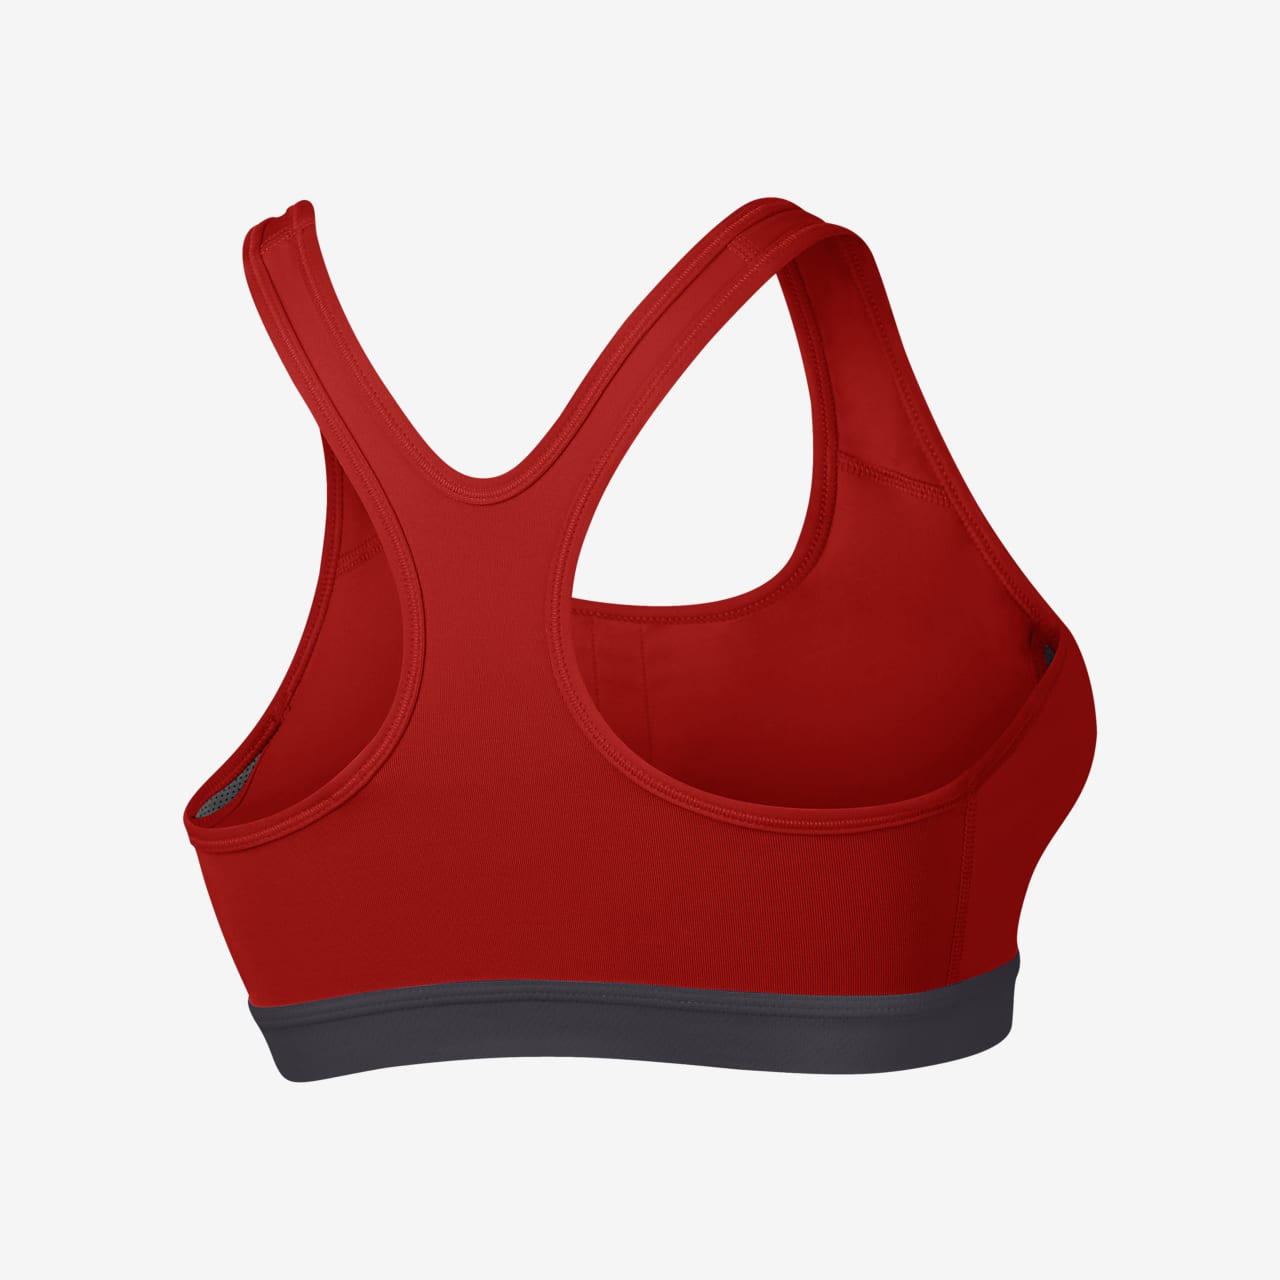 classic sports bra